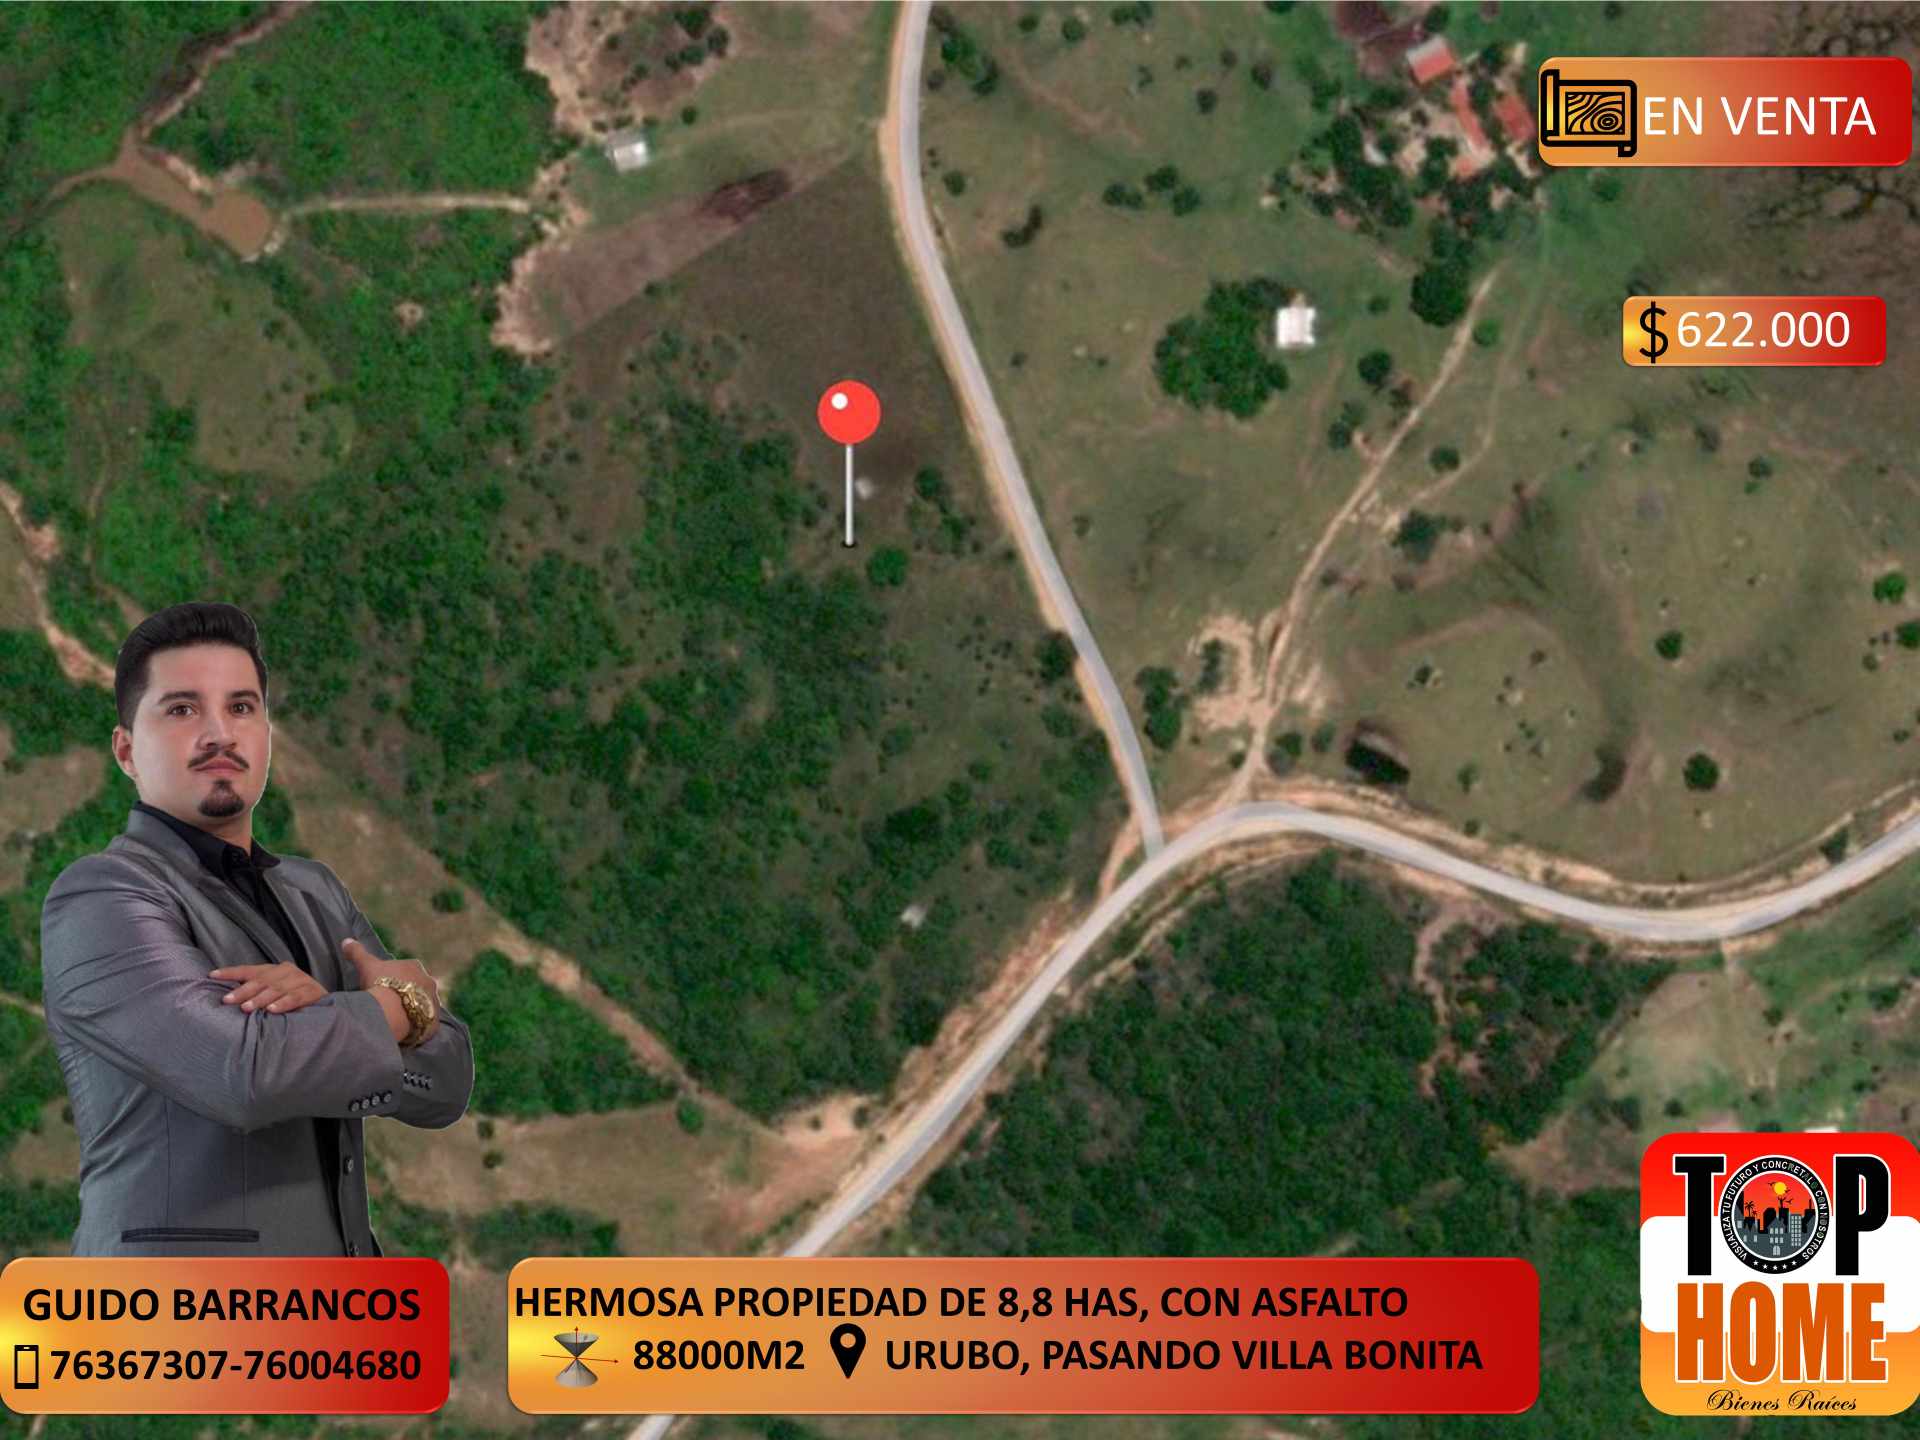 Quinta propiedad agrícola HERMOSA PROPIEDAD EN VENTA ZONA URUBO Foto 1